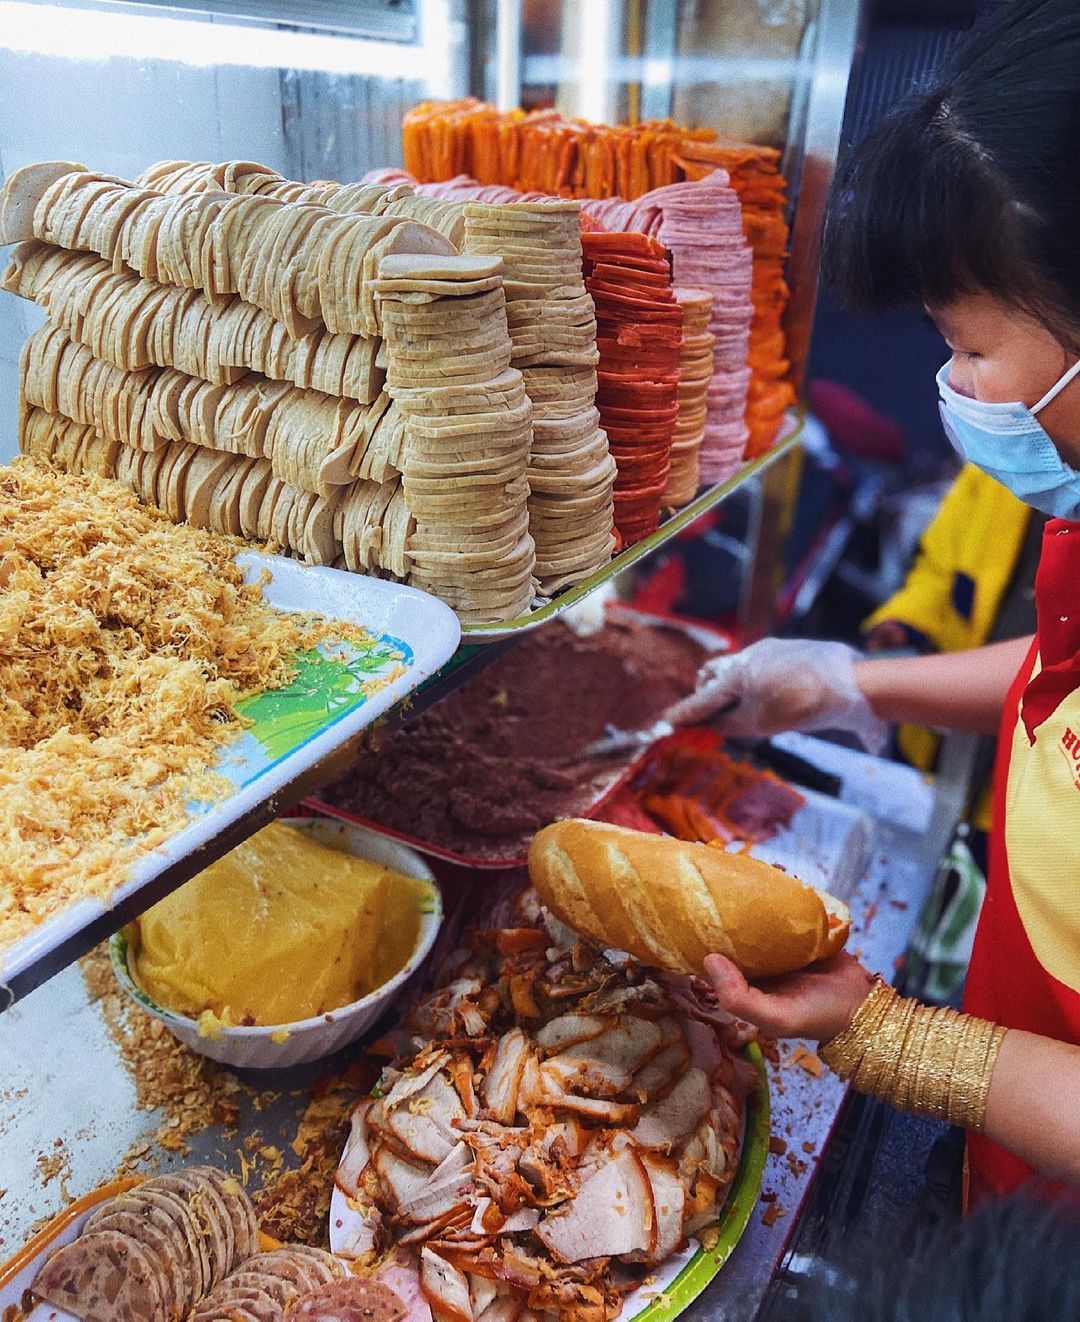 Loạt bánh mì đắt nhất Sài Gòn: Vượt Huỳnh Hoa, Bà Huynh, có loại giá 2 triệu đồng/ ổ